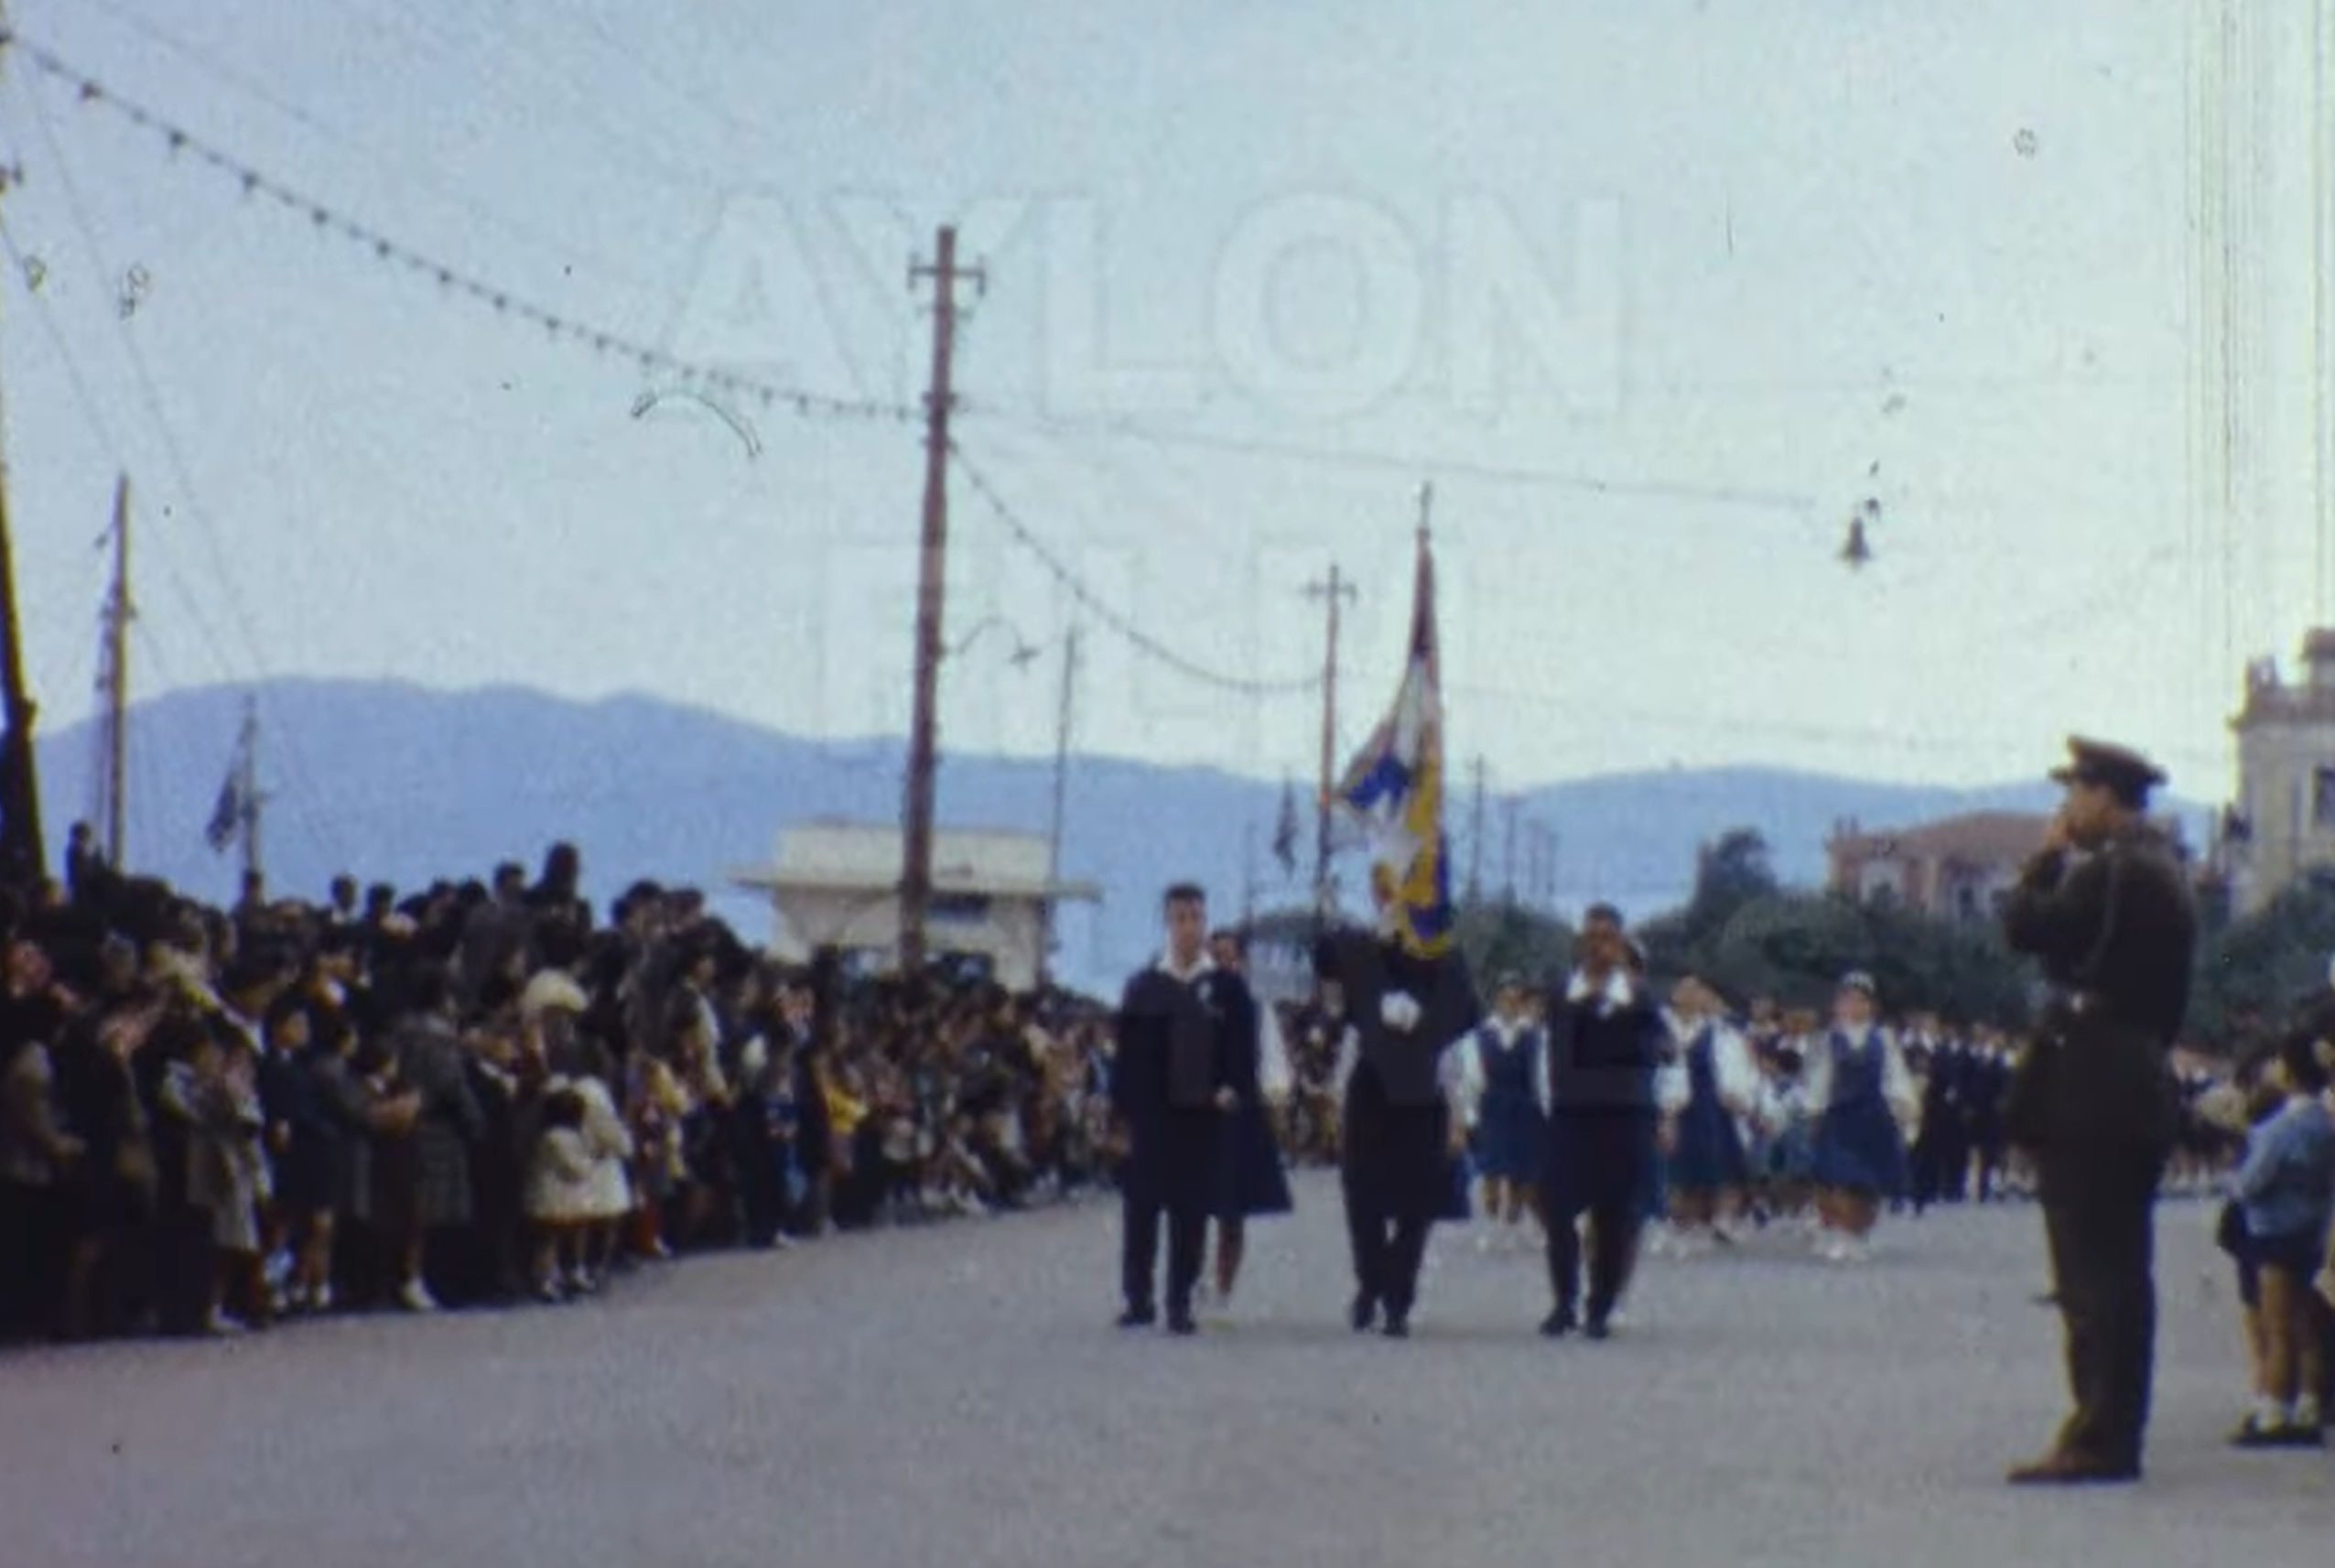 25η Μαρτίου: Σπάνιο βίντεο από παρέλαση στη Χαλκίδα το 1962